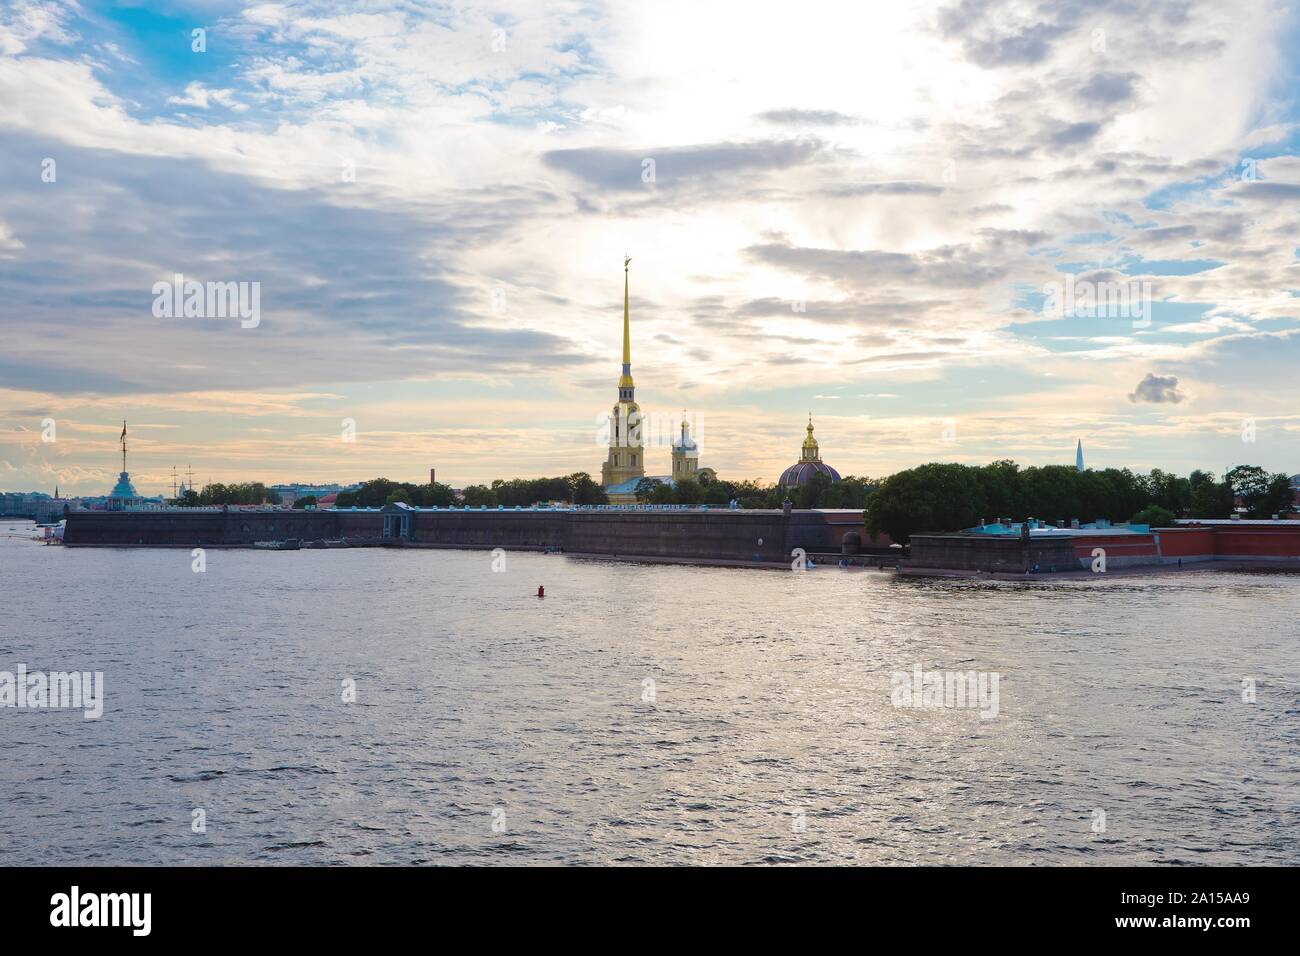 Saint-pétersbourg, Russie - 6 juillet 2019 : vue du coucher de soleil sur la cathédrale Pierre-et-Paul à Saint-Pétersbourg, à partir de la rivière Neva Banque D'Images